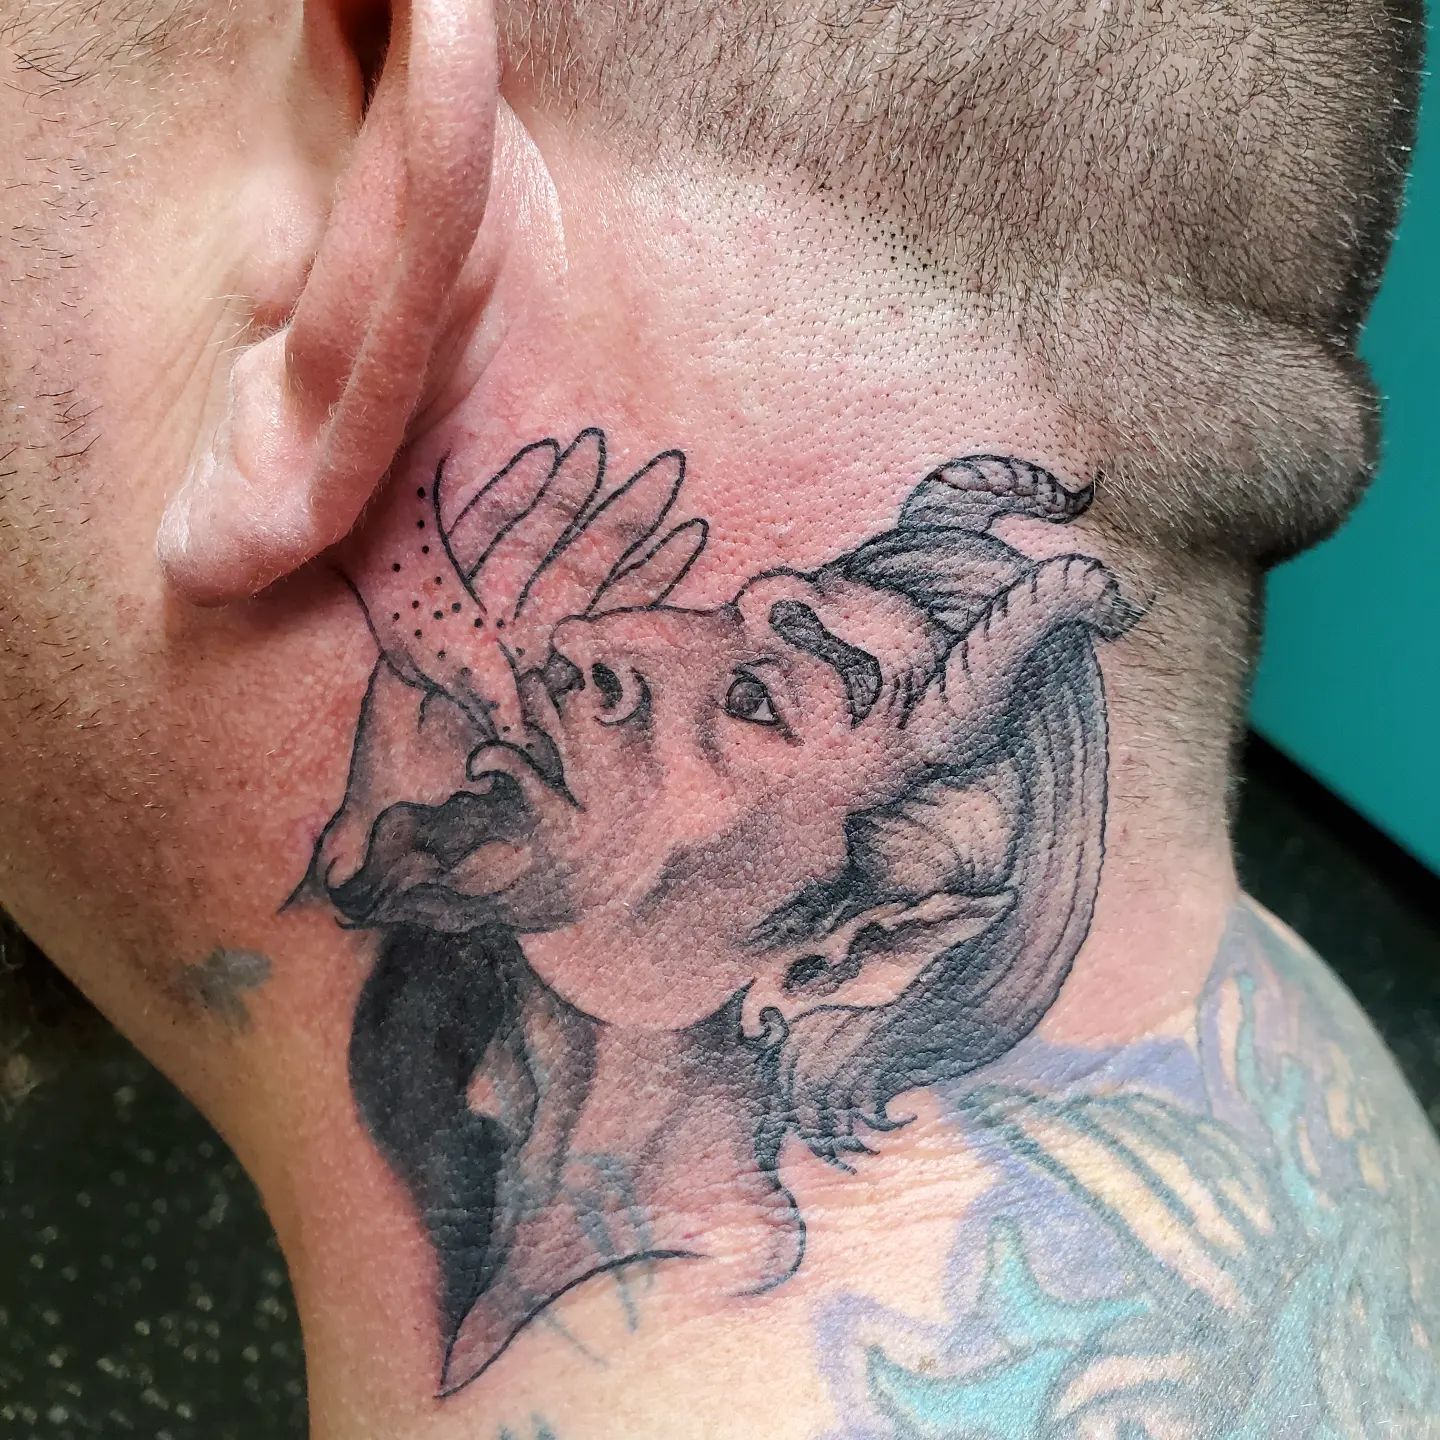 Tatuaje del diablo detrás de la oreja.